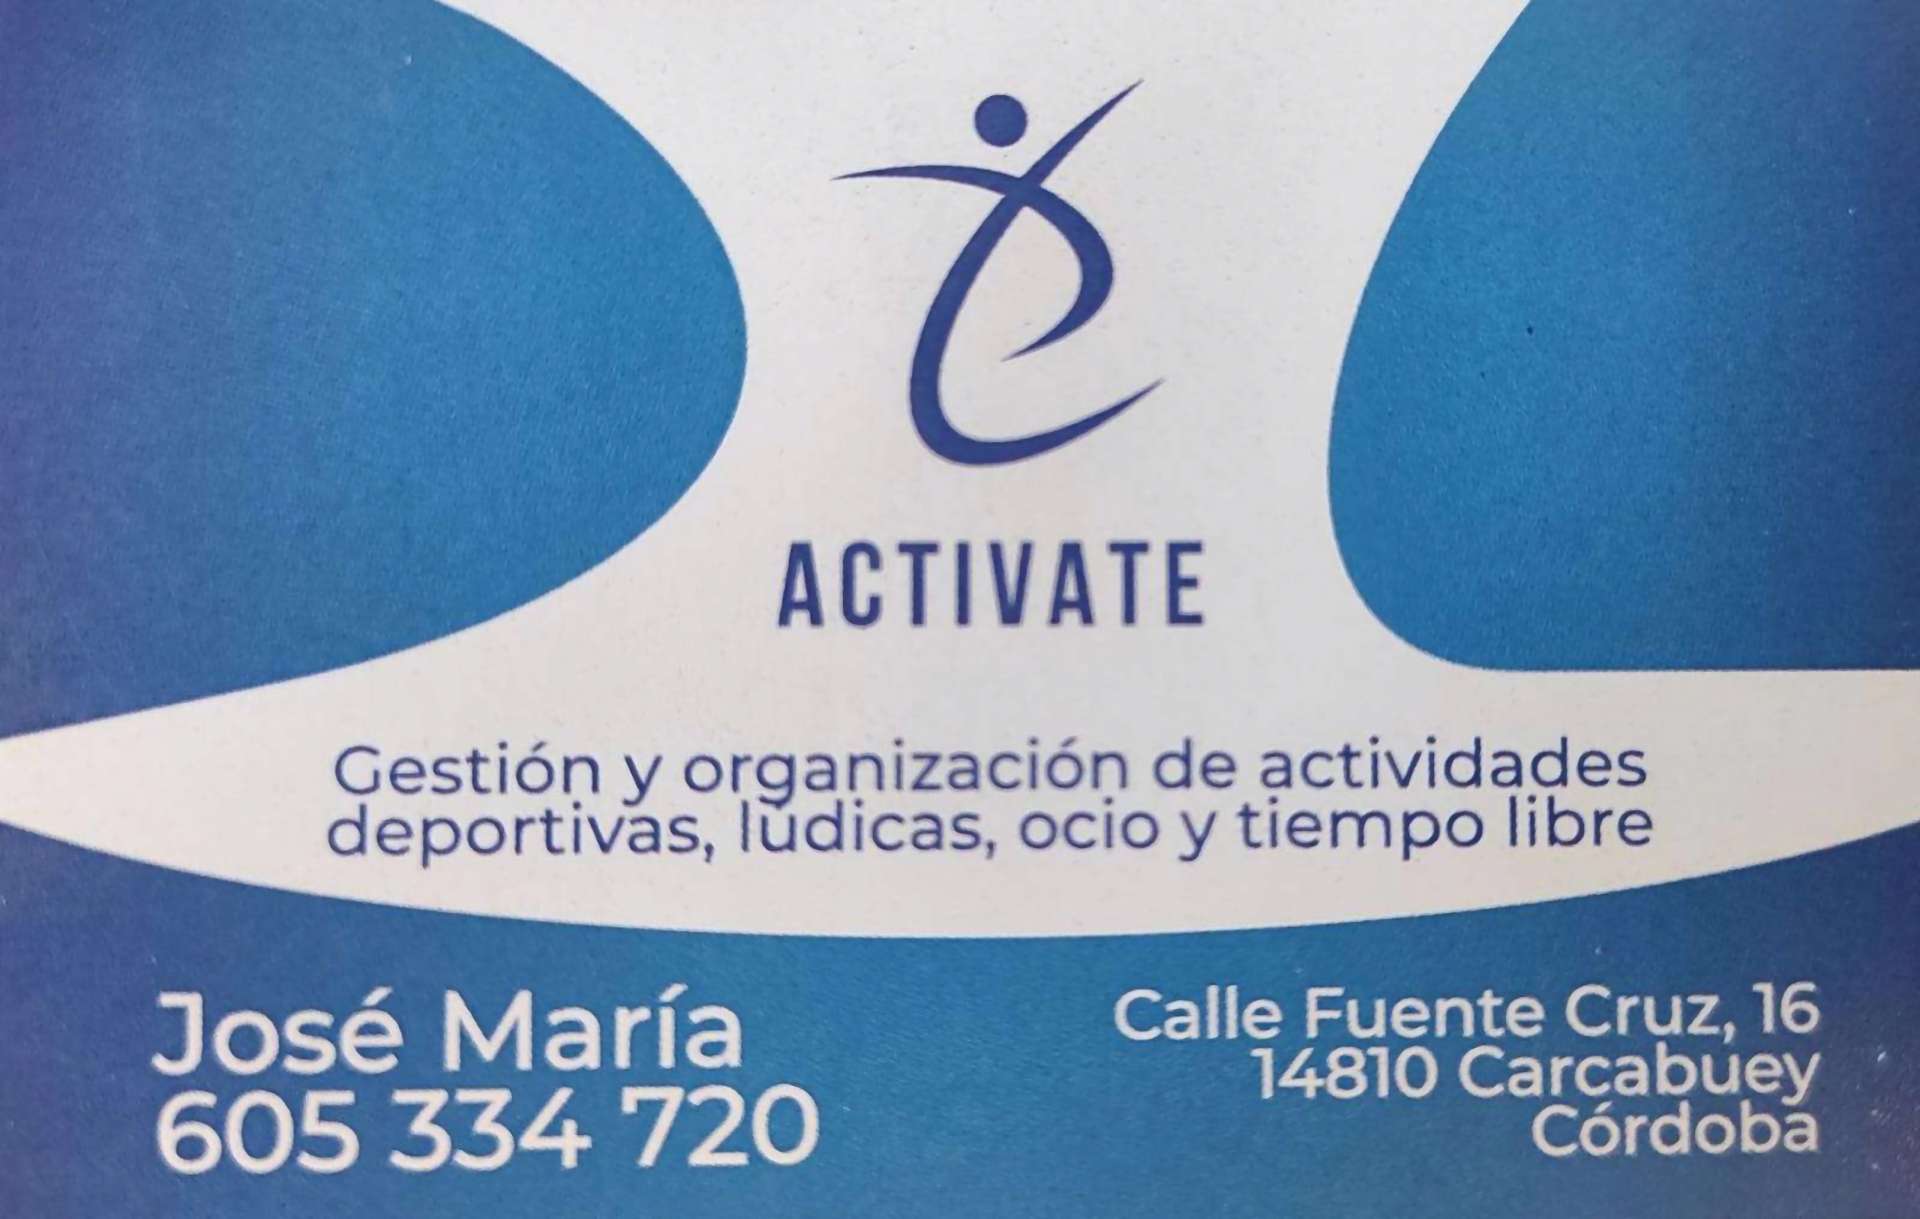 Activate ( Gestión y organización de actividades deportivas, ludicas, ocio y tiempo libre